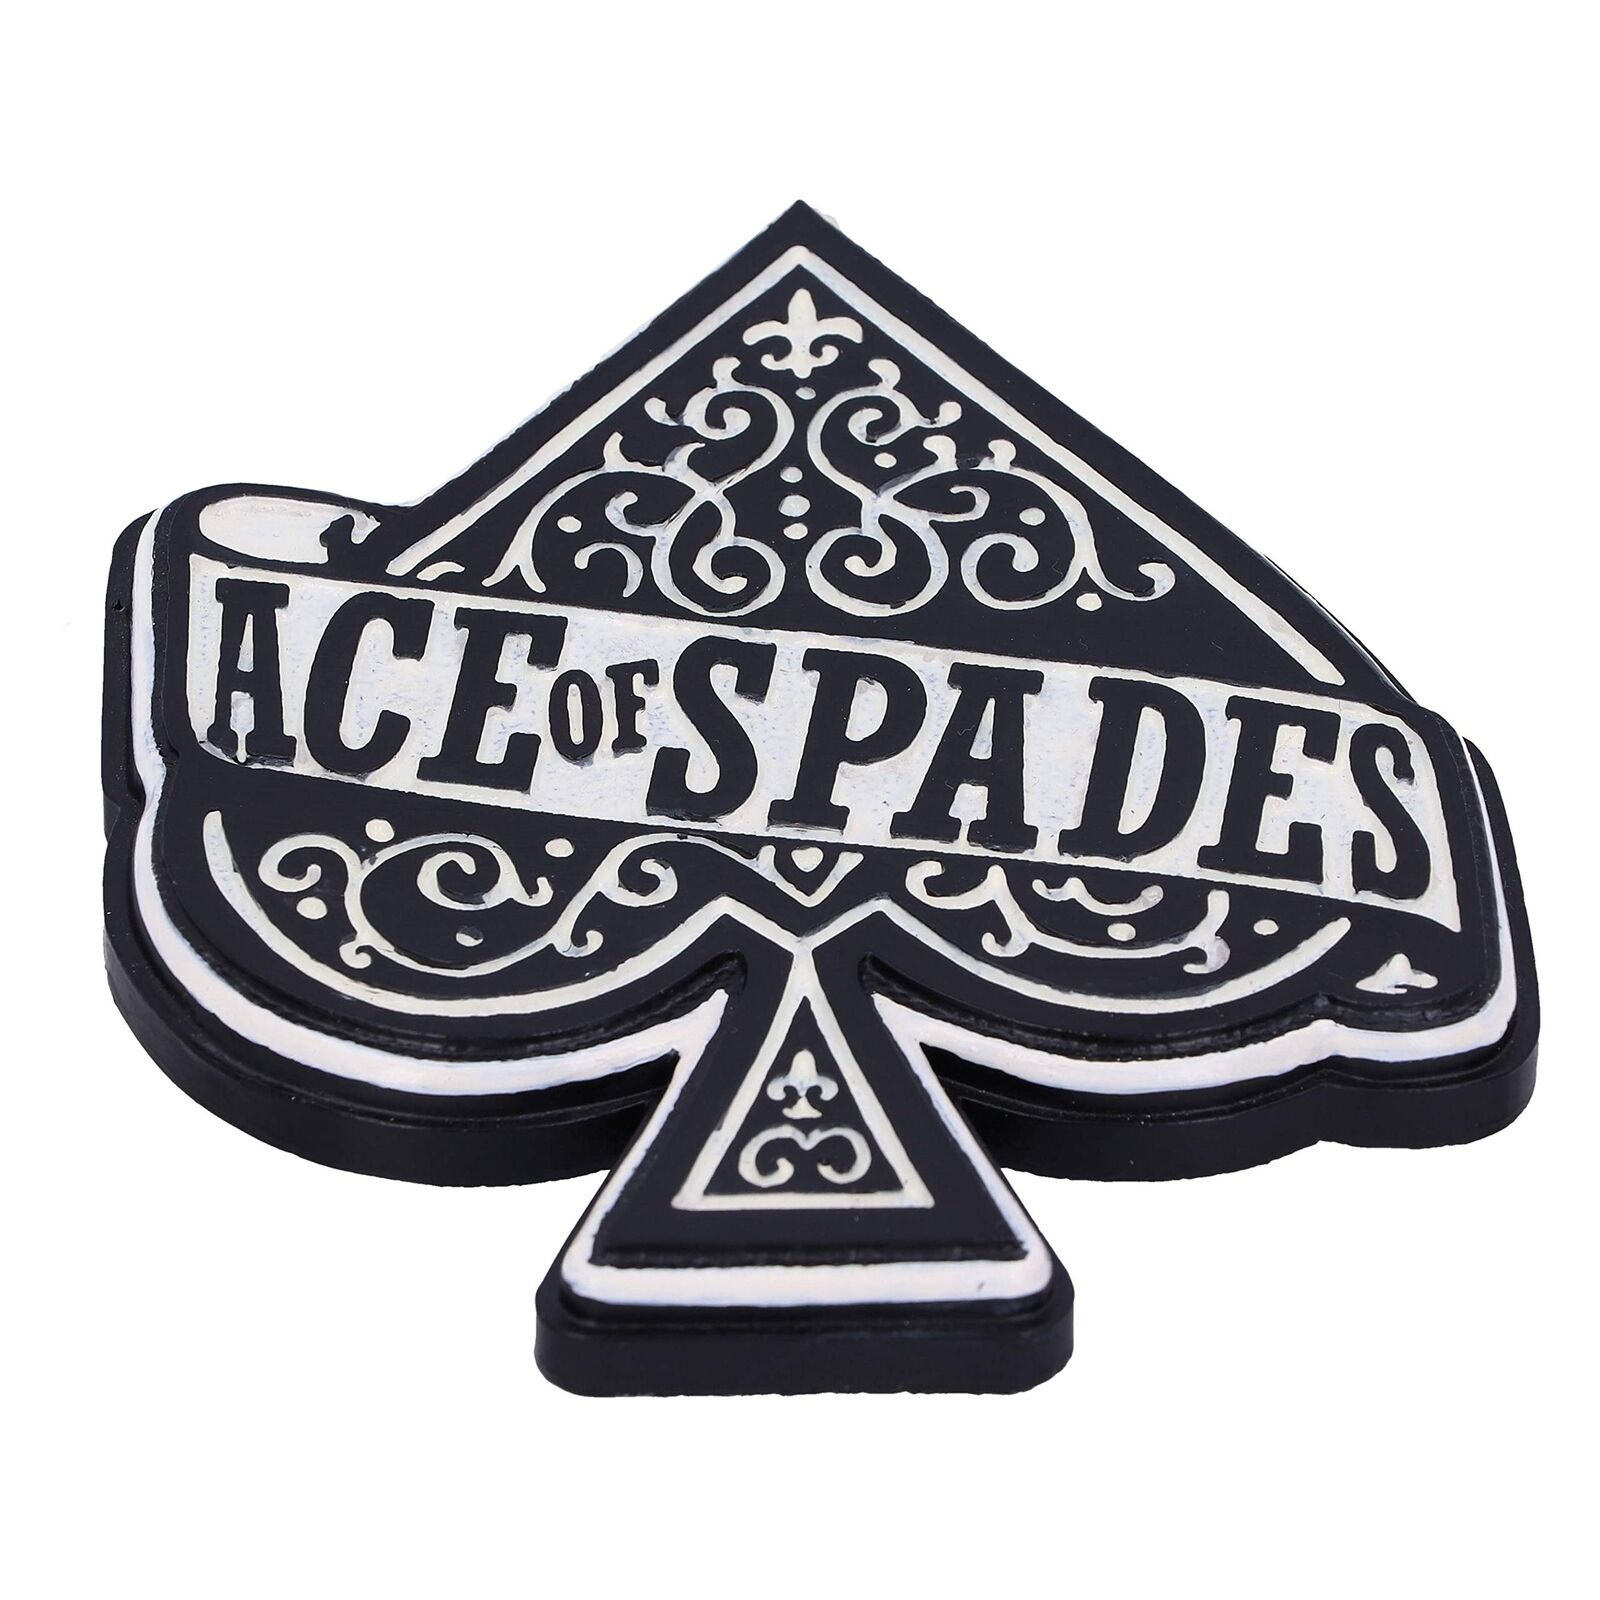 Motorhead Ace Of Spades Resin Bordbrikker 4-Pack